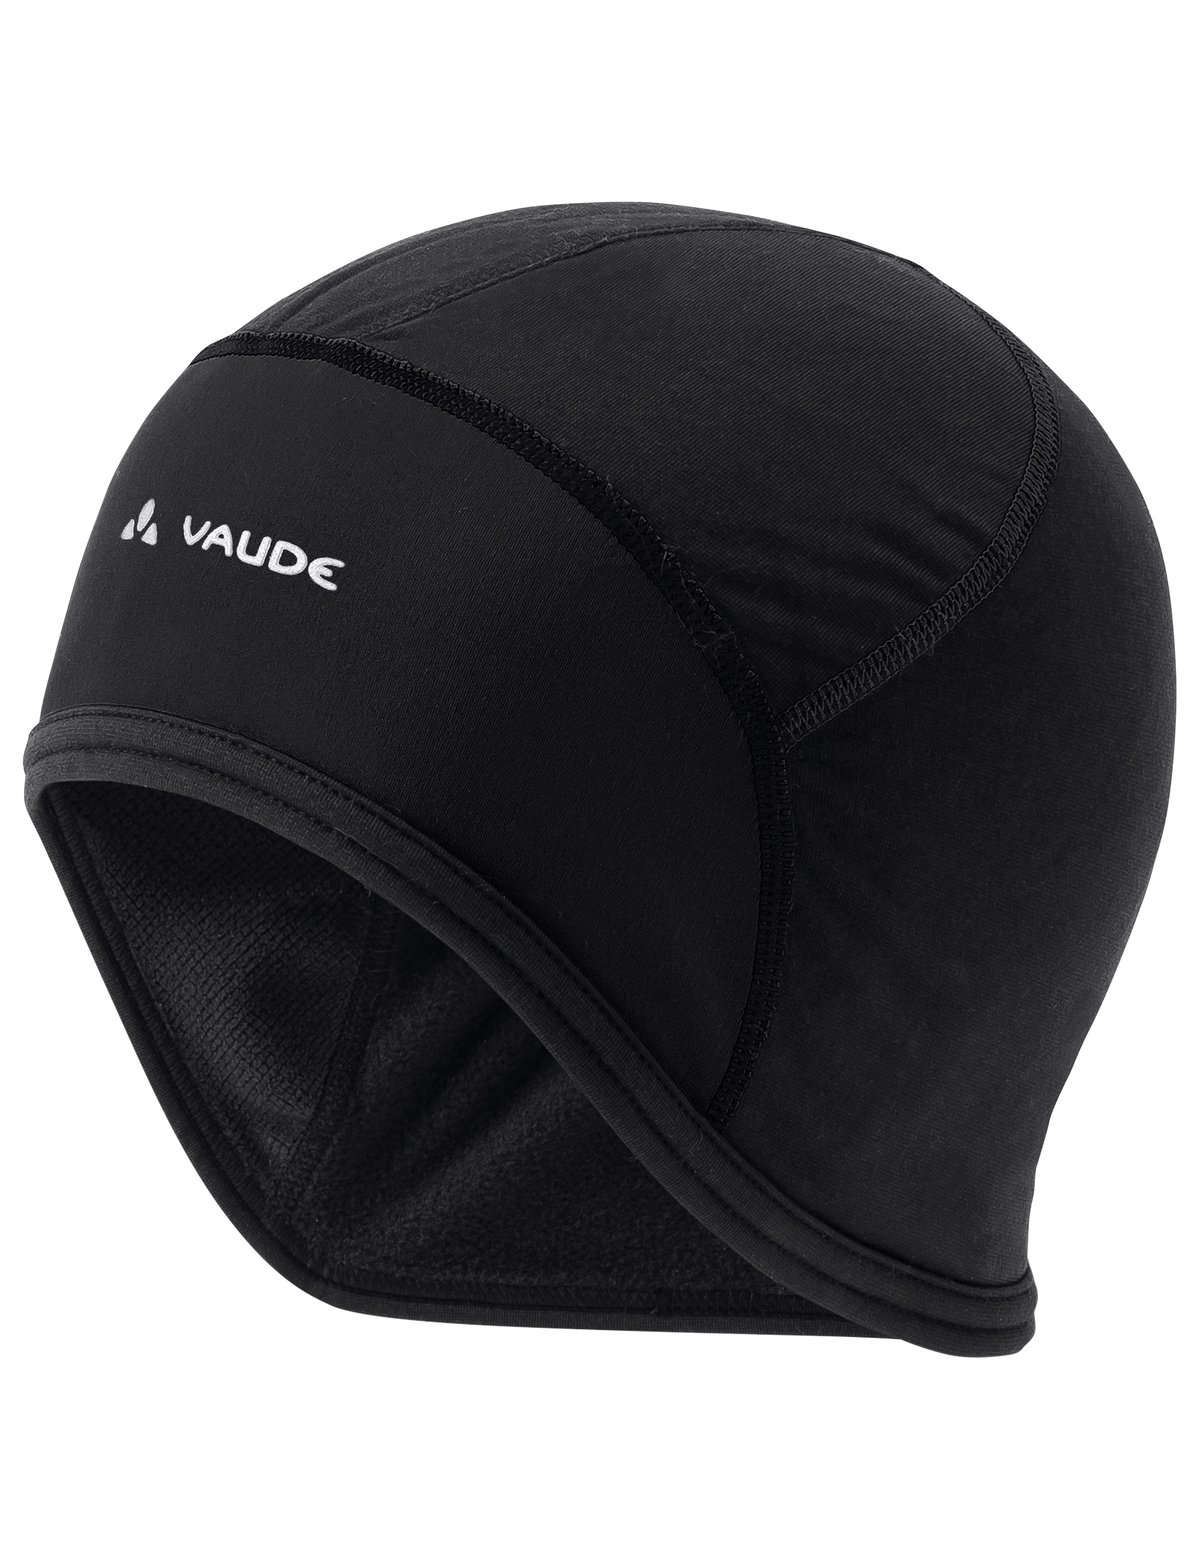 VAUDE Bike Cap / black/white / Uni / L / 2022